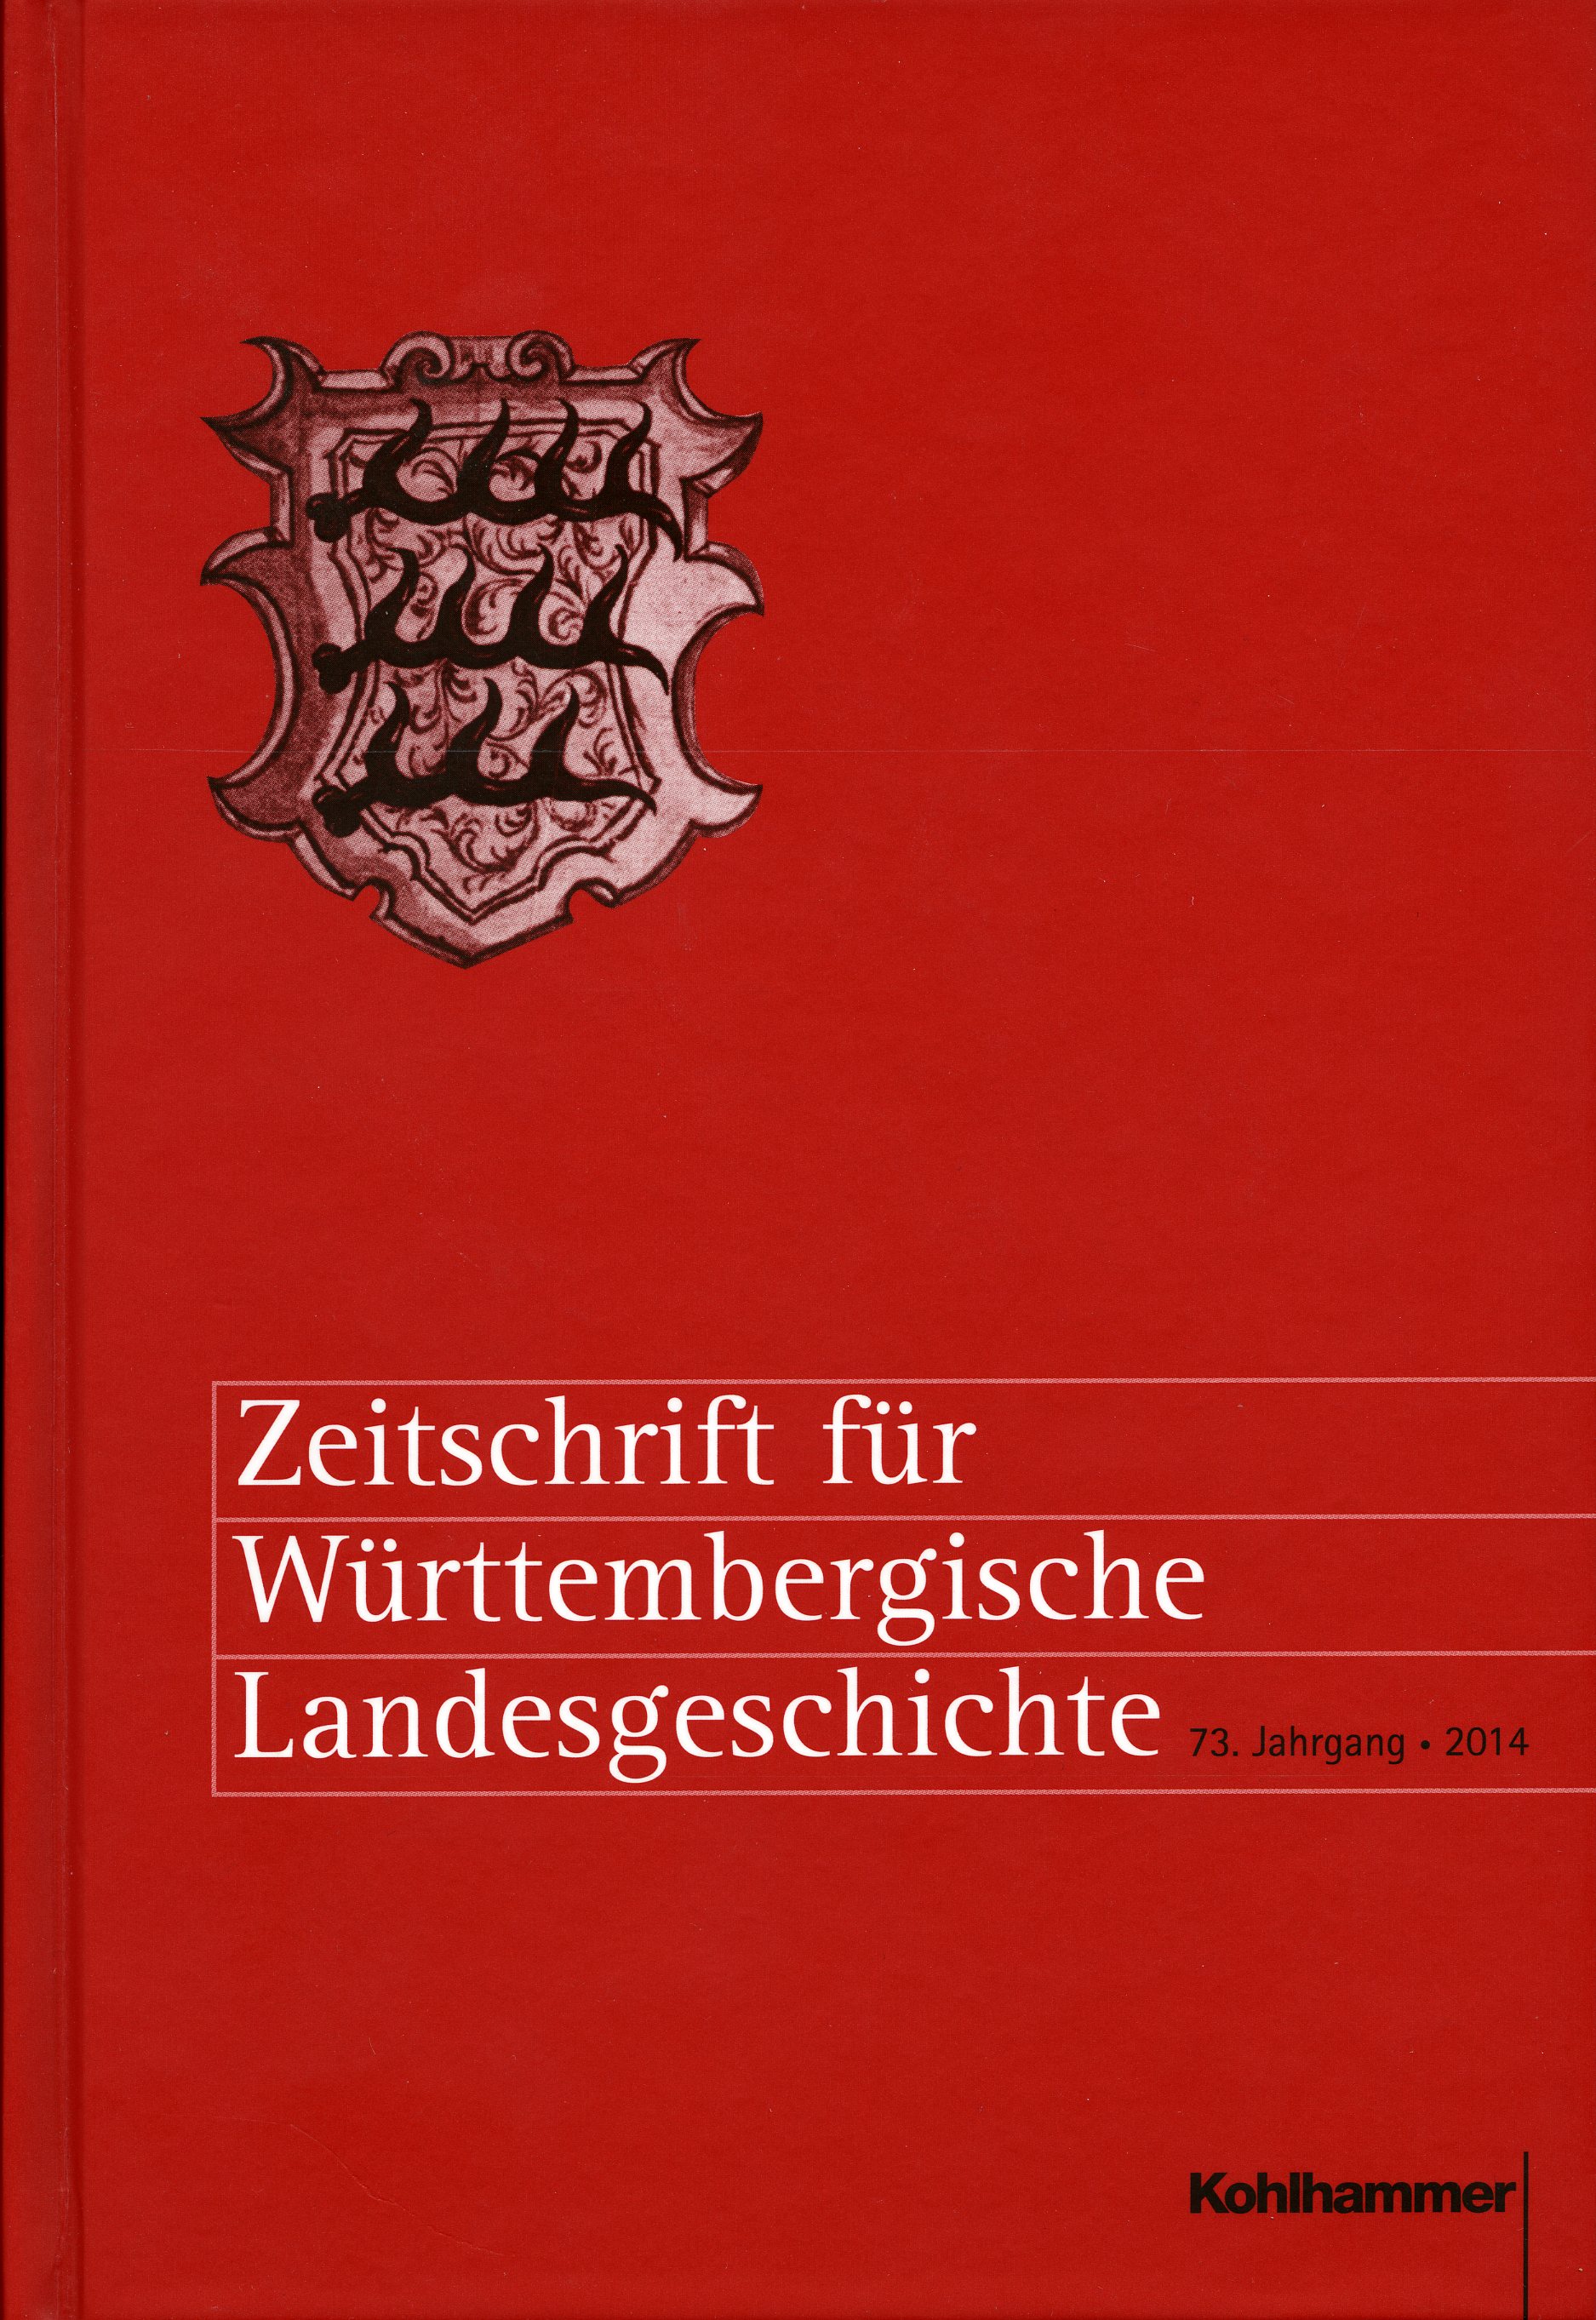                     Ansehen Bd. 73 (2014): Zeitschrift für Württembergische Landesgeschichte
                